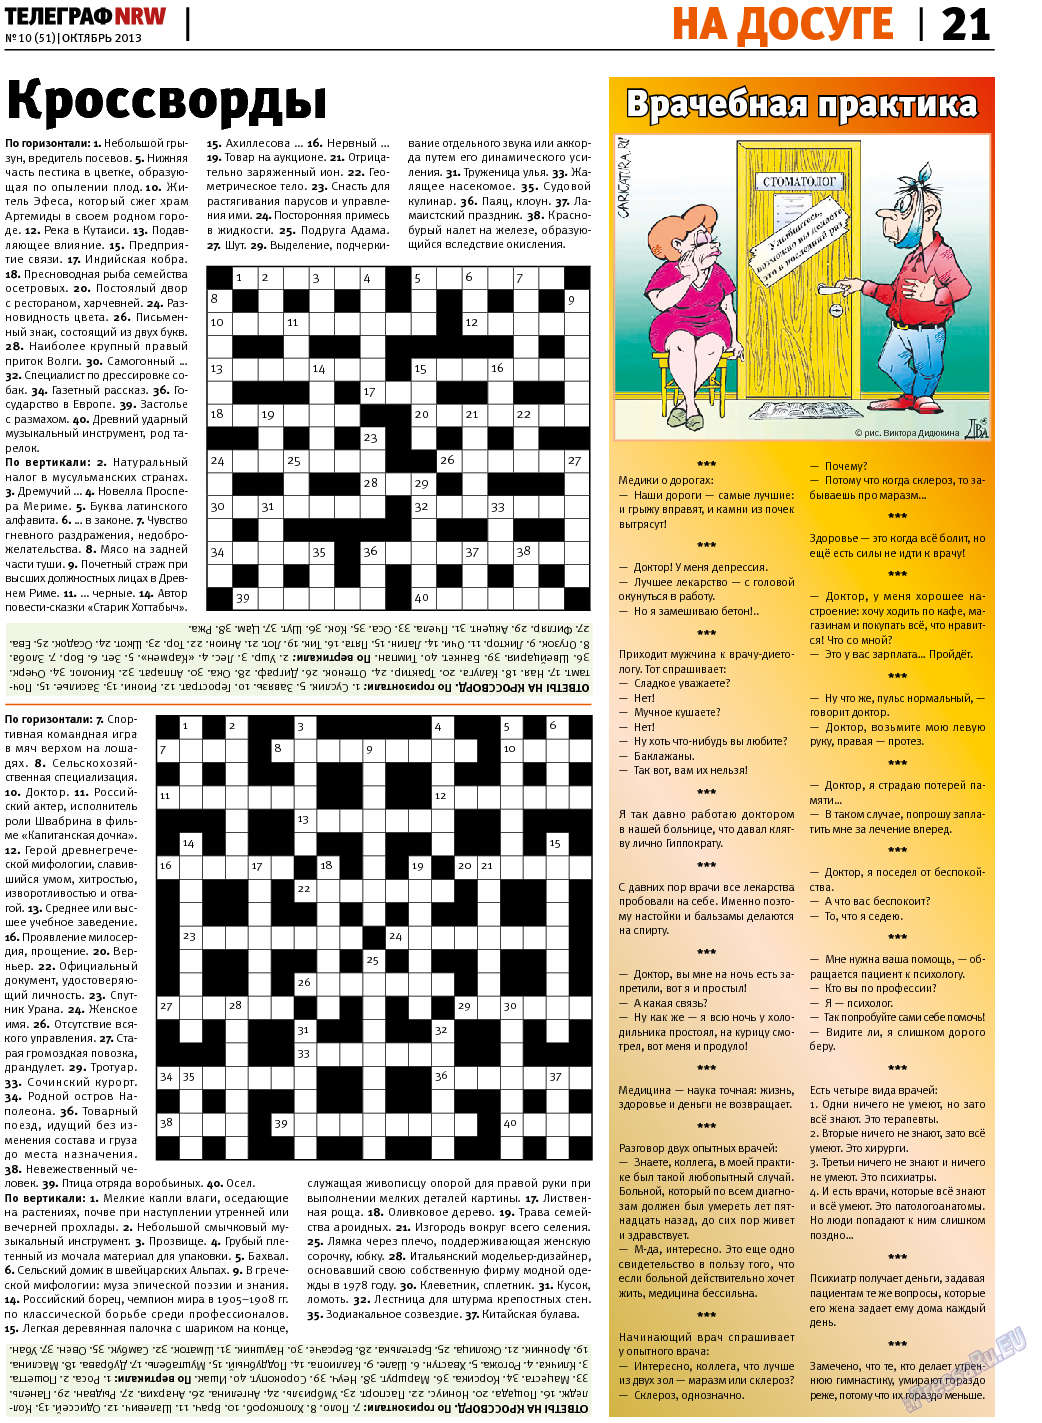 Телеграф NRW (газета). 2013 год, номер 10, стр. 21